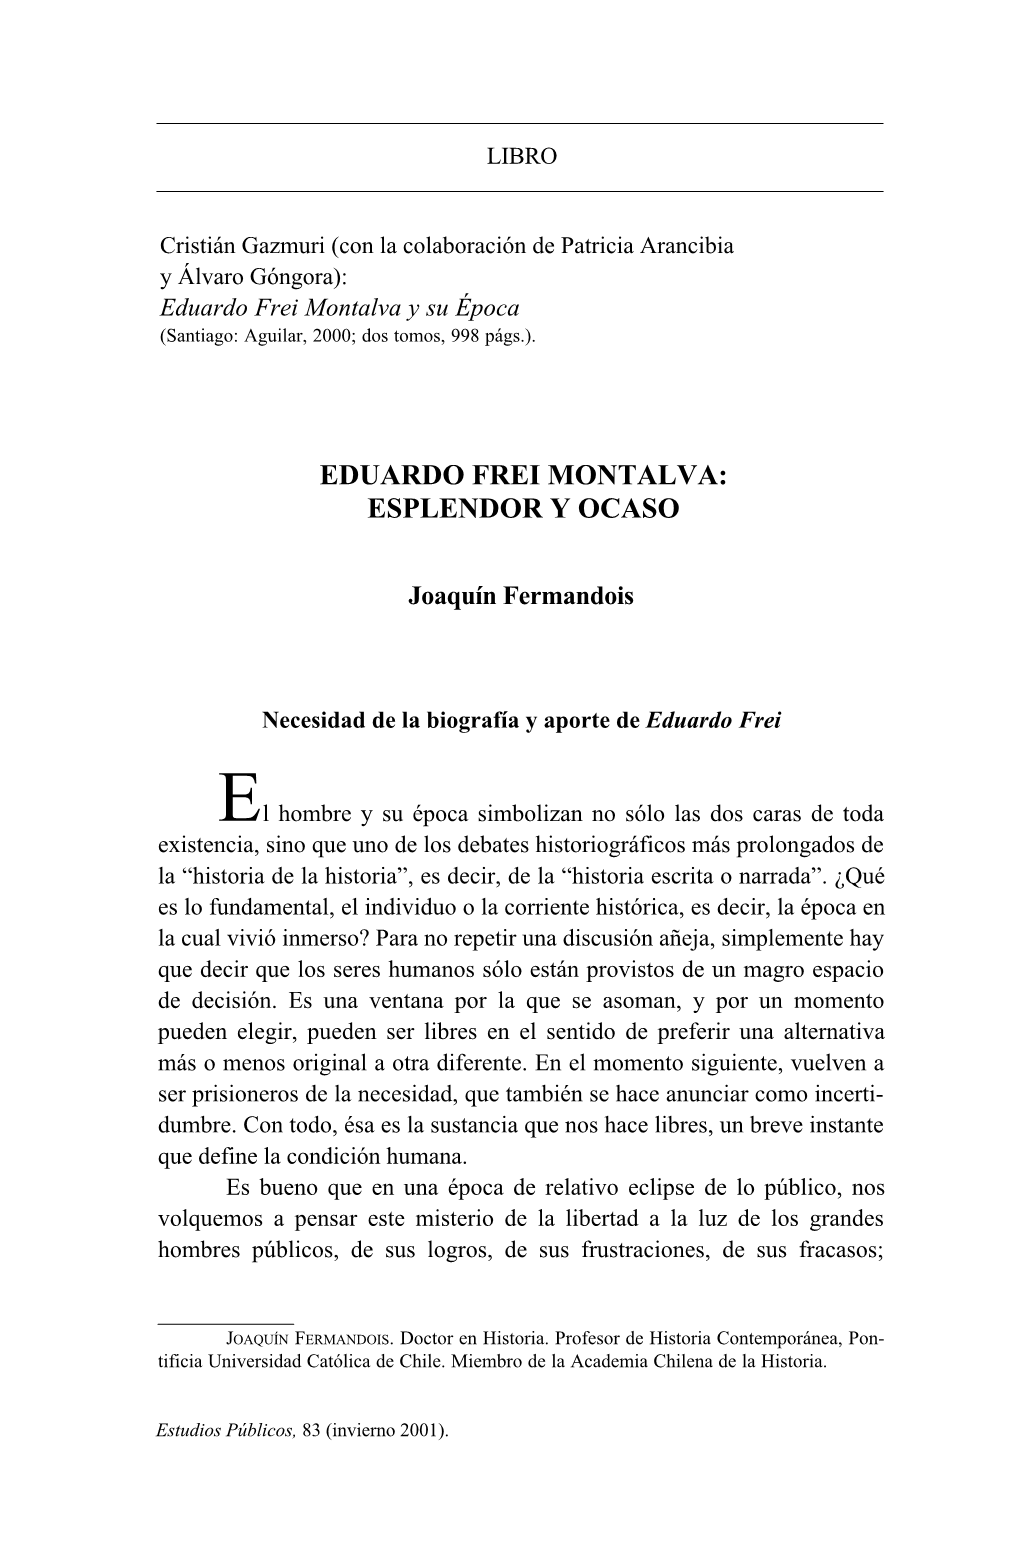 Eduardo Frei Montalva Y Su Época (Santiago: Aguilar, 2000; Dos Tomos, 998 Págs.)